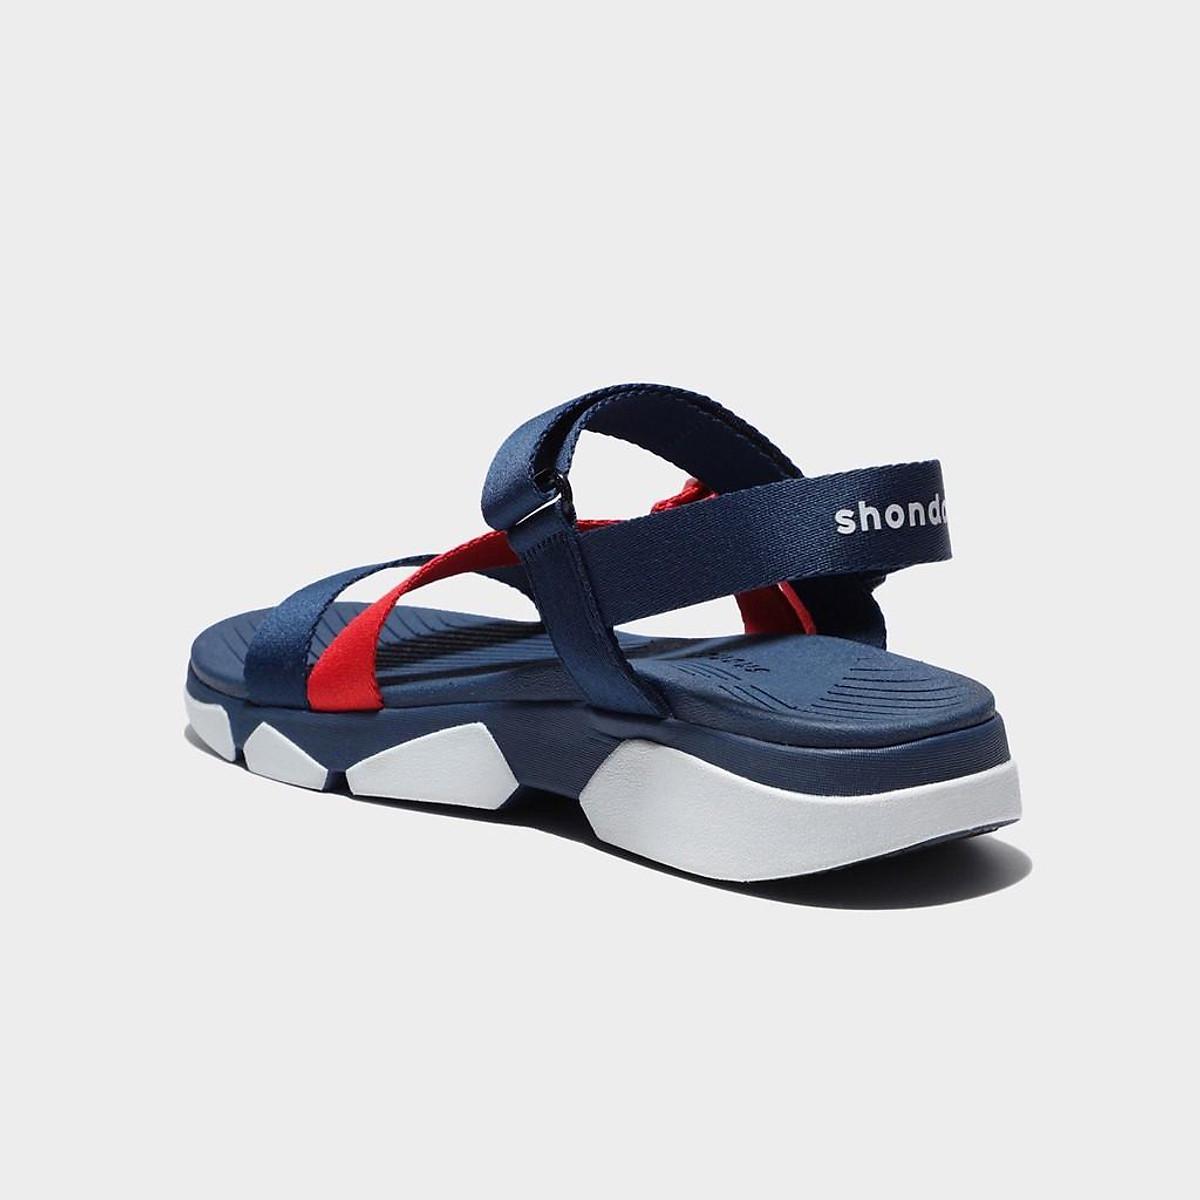 Giày sandal Shondo F7 Track nam nữ đi học đế bằng xanh navy đế trắng F7T0036